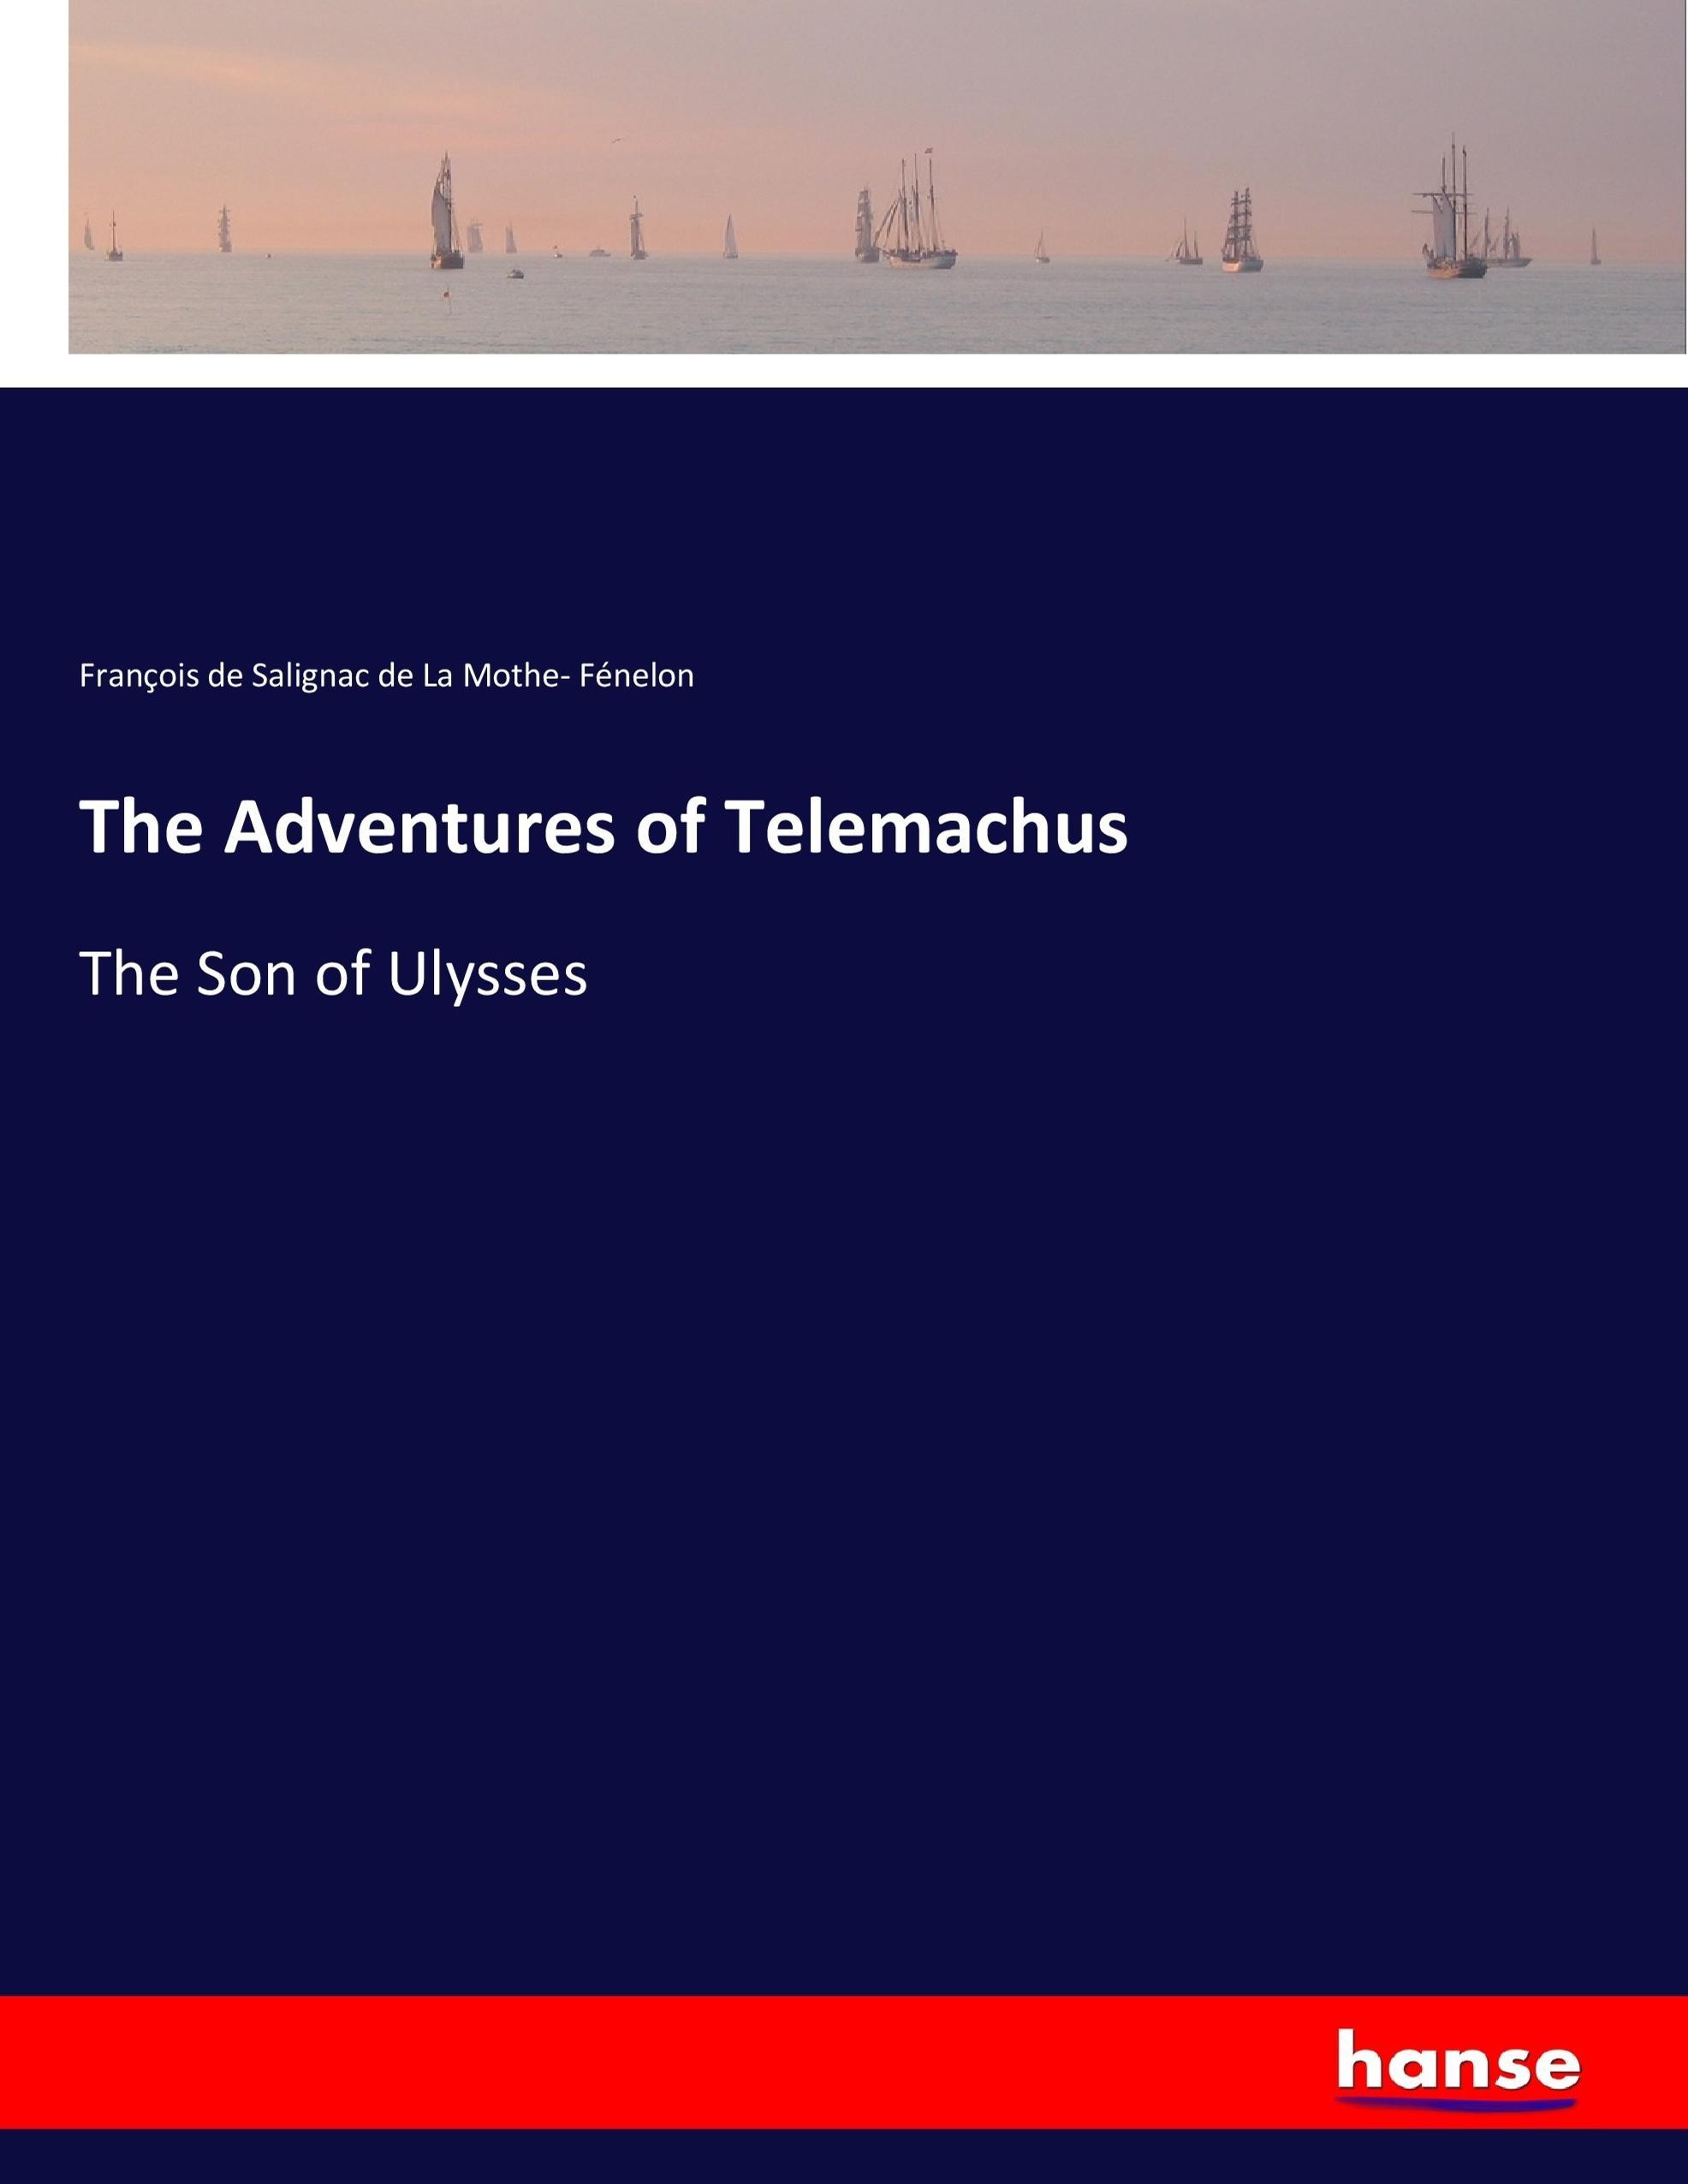 The Adventures of Telemachus | The Son of Ulysses | François de Salignac de La Mothe Fénelon | Taschenbuch | Paperback | 504 S. | Englisch | 2017 | hansebooks | EAN 9783337342951 - Fénelon, François de Salignac de La Mothe